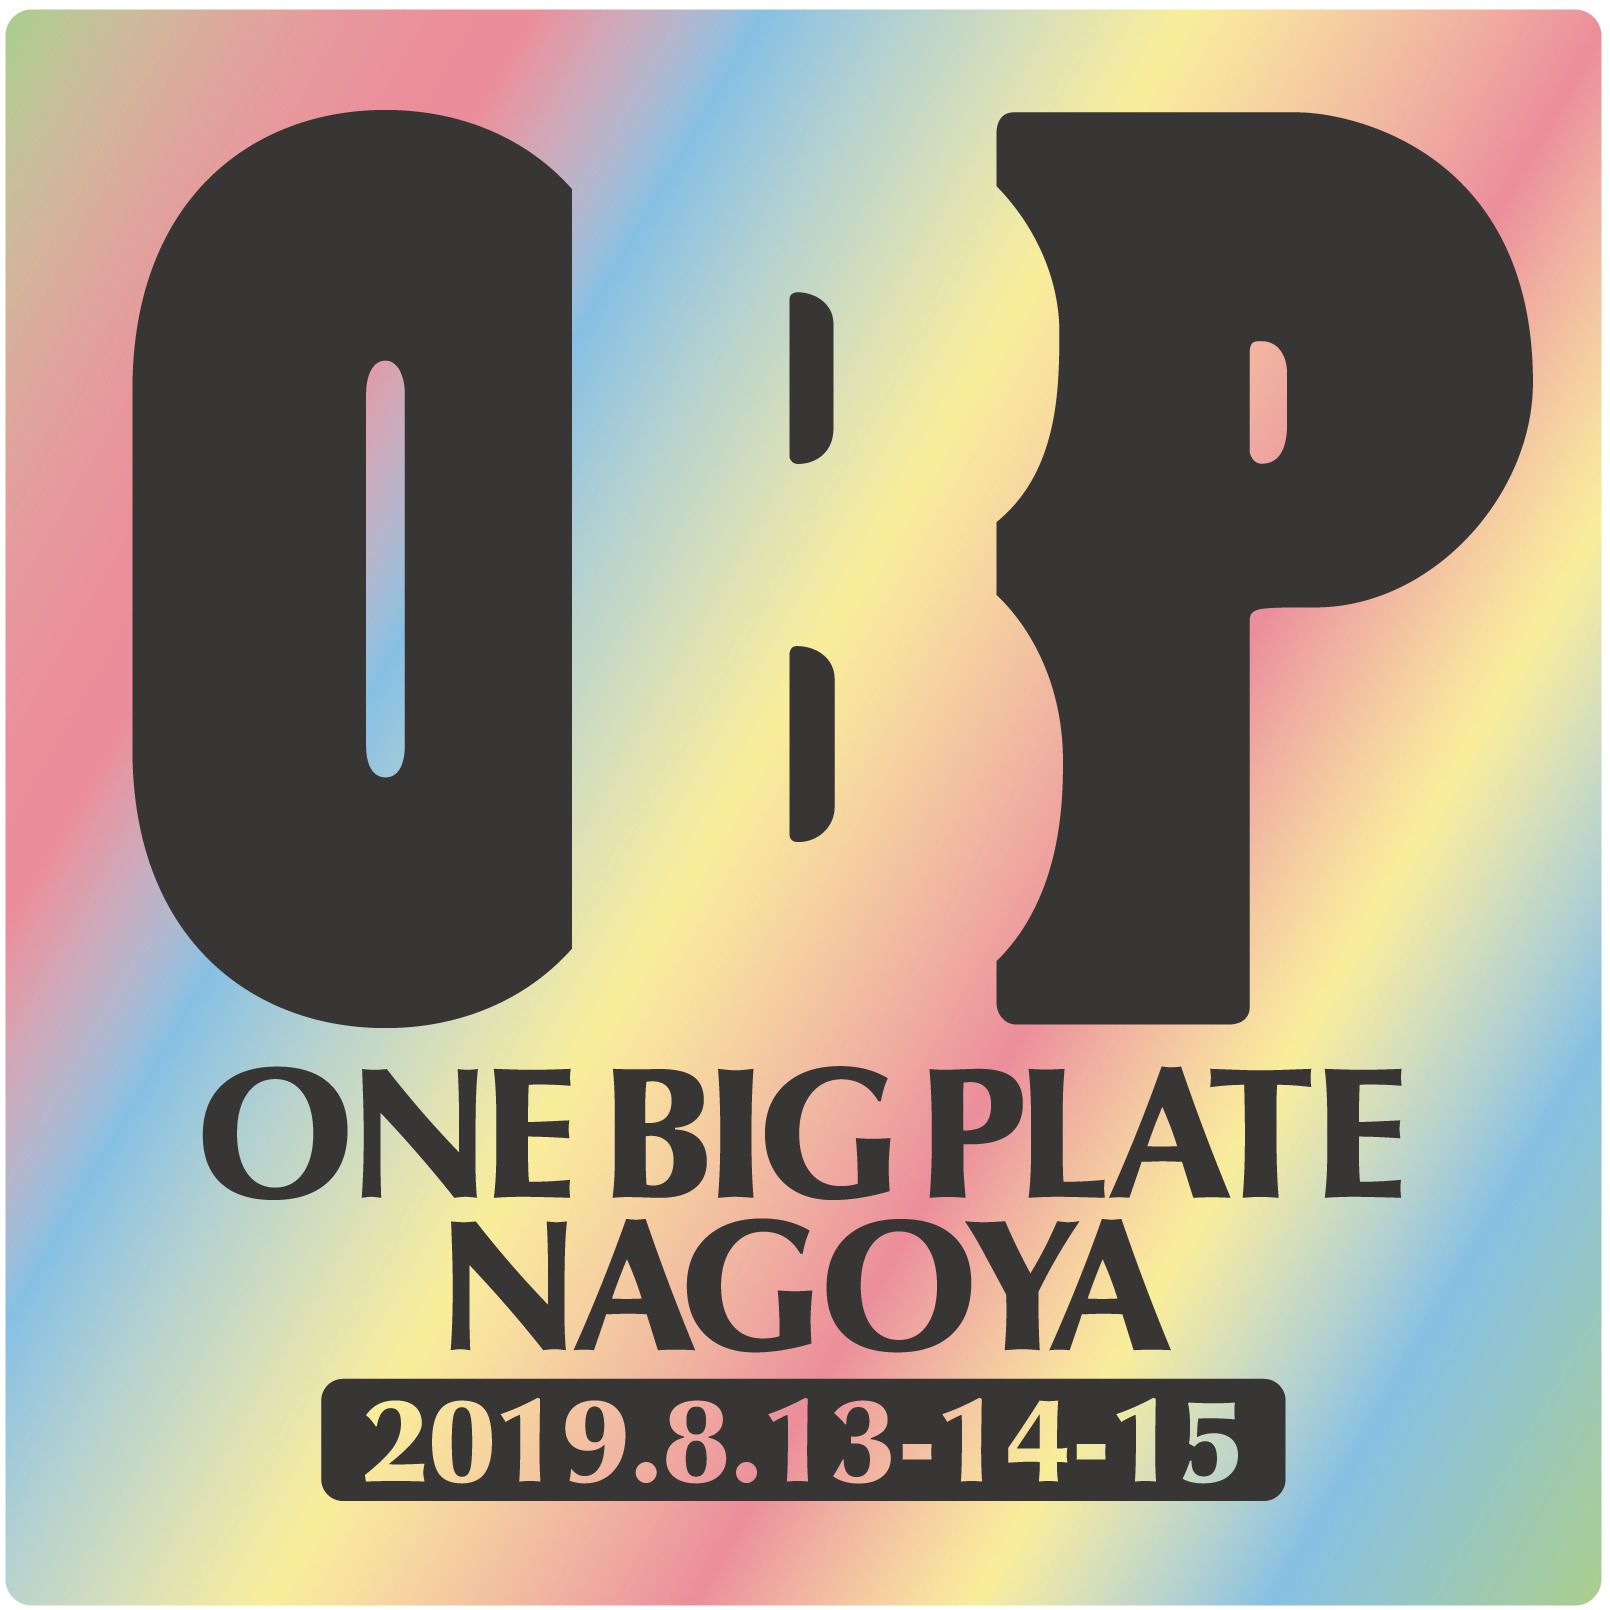 OneBigPlate NAGOYA